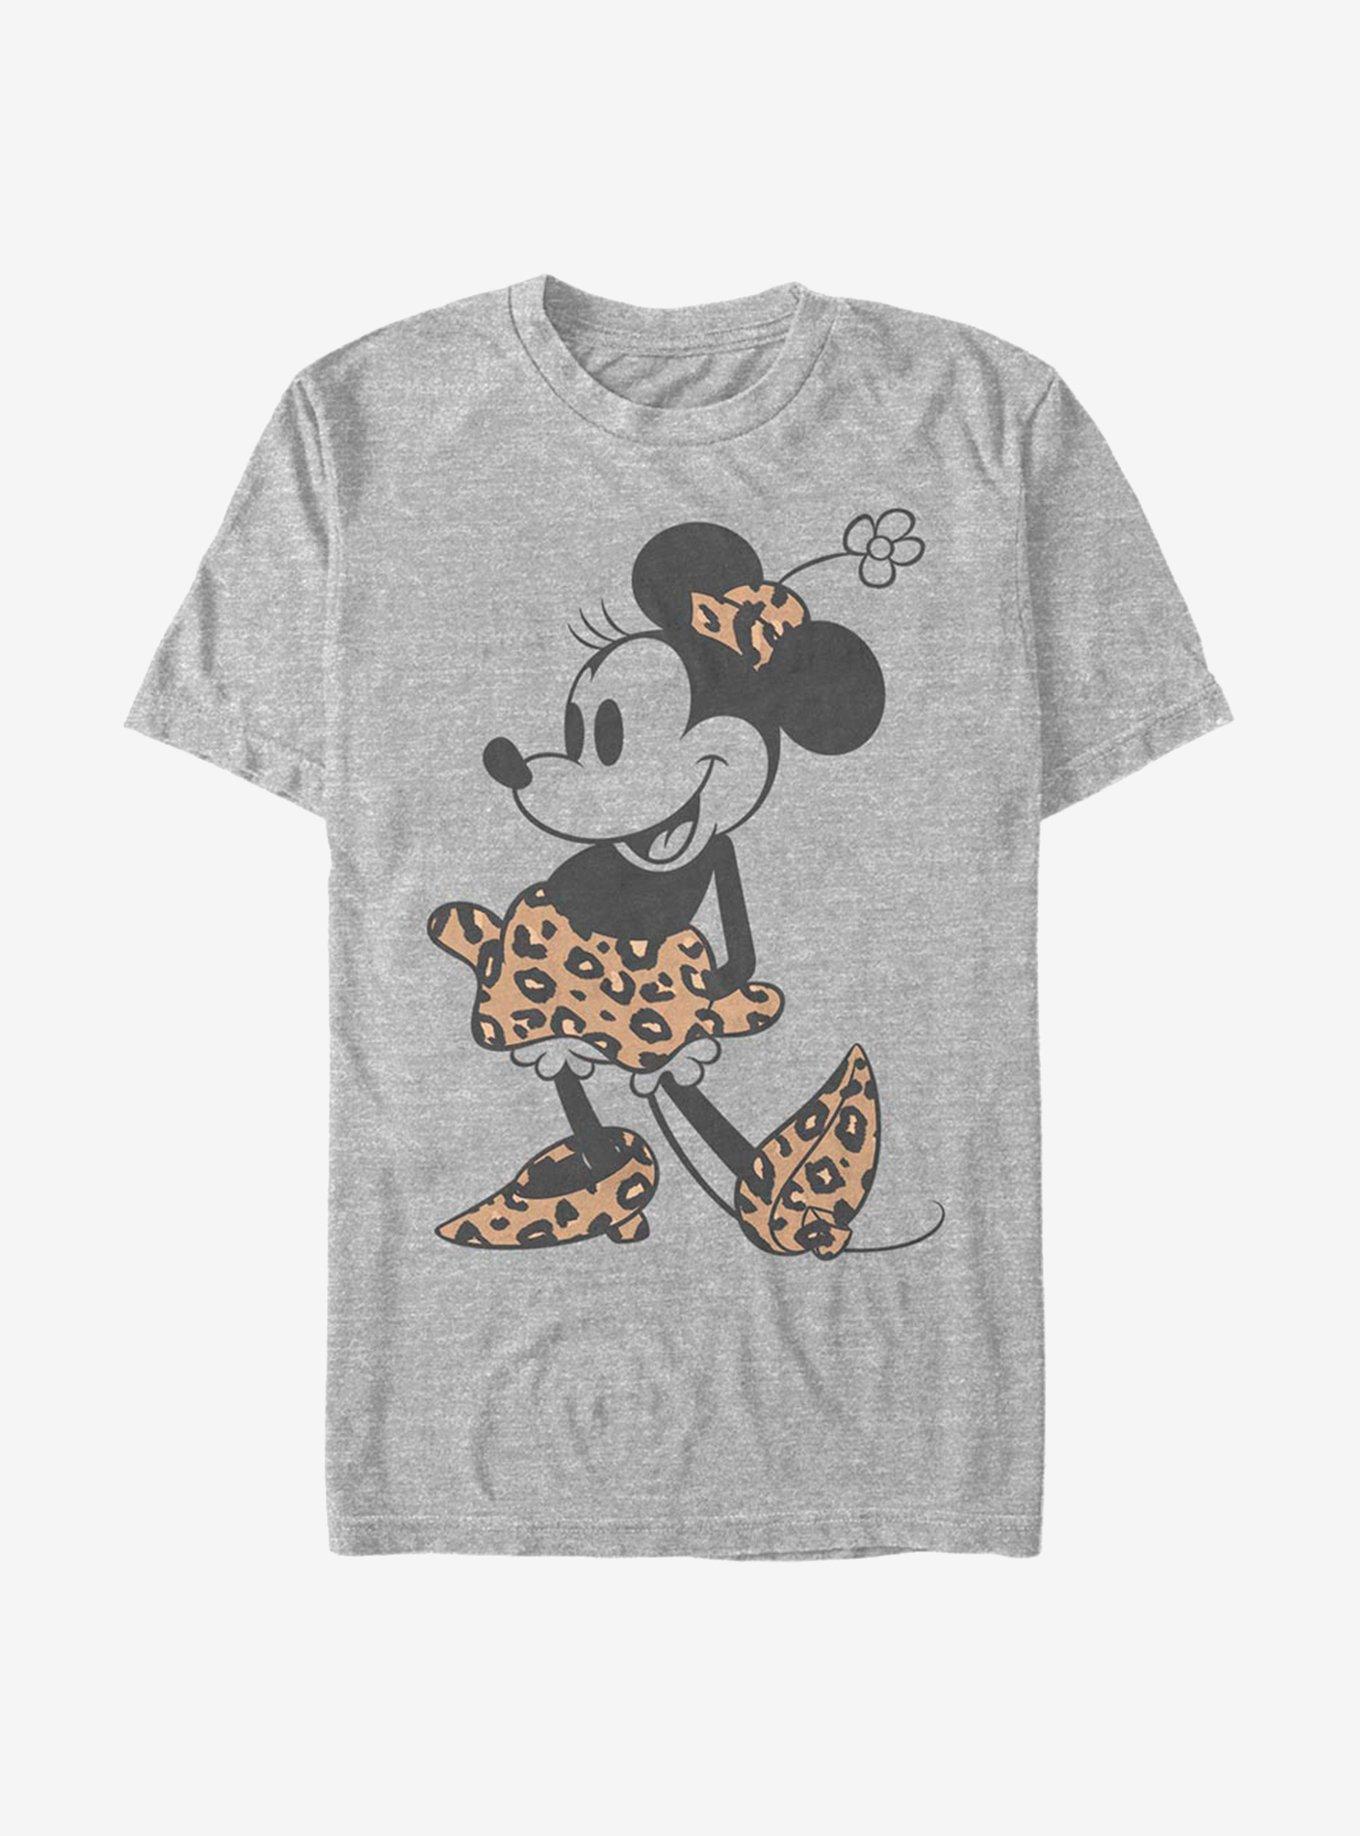 Disney Minnie Mouse Leopard T-Shirt